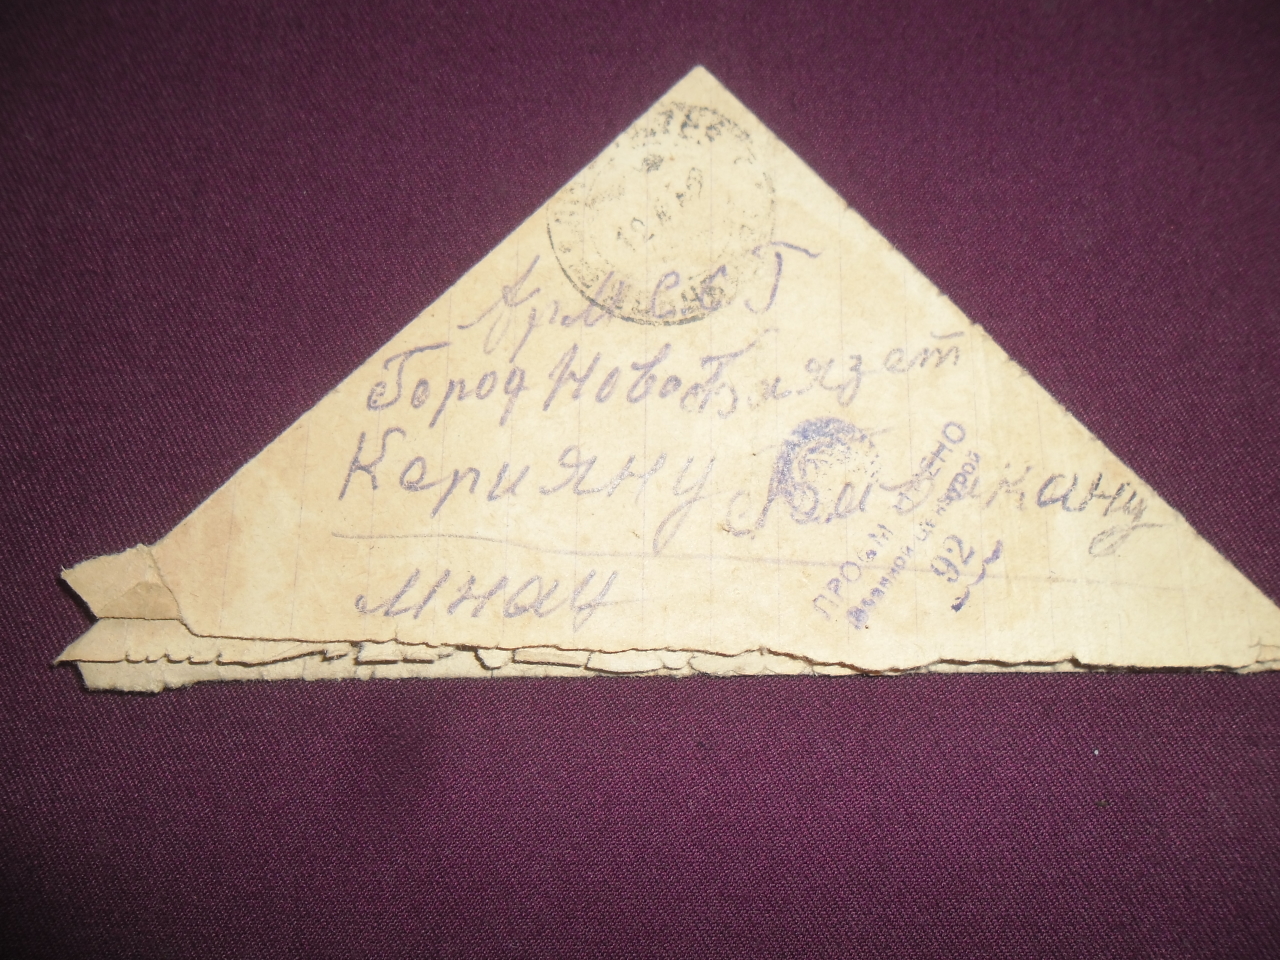 Նամակ եռածալ՝ Քեռյան Մնացական Միսակի (Հայրենական պատերազմի մասնակից)